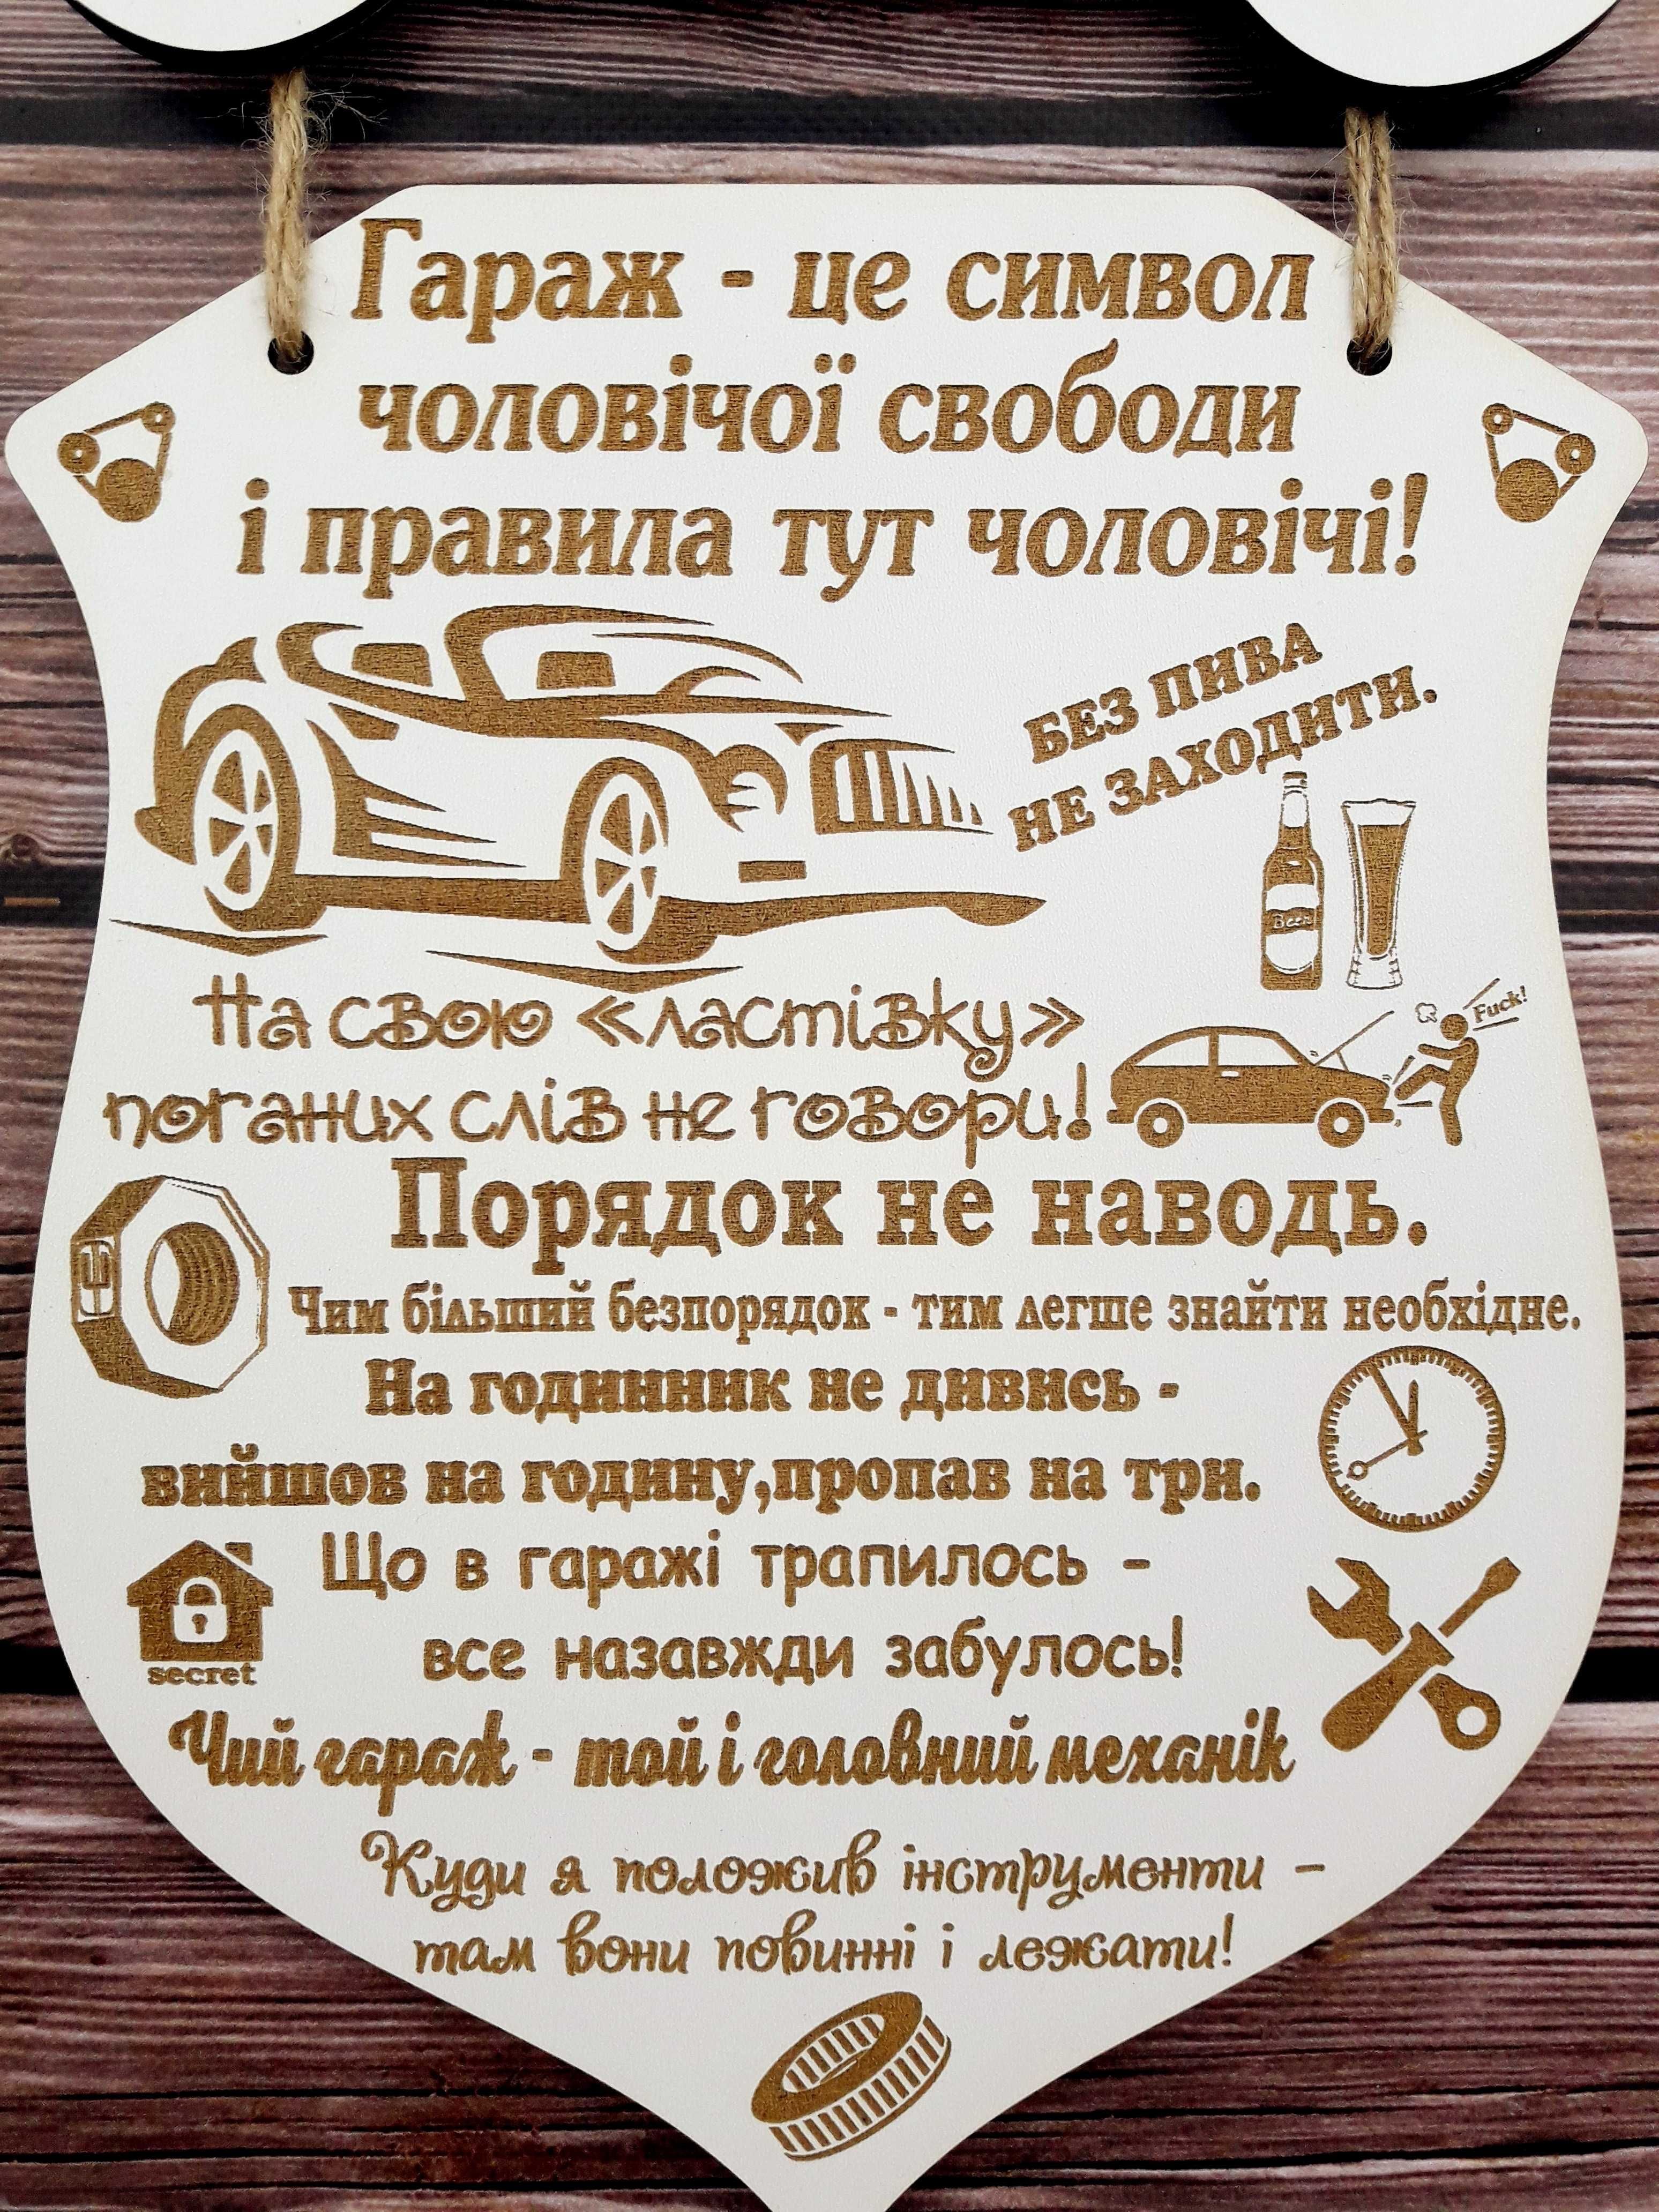 Дерев'яна табличка Правила гаража- подарунок чоловіку автолюбителю!